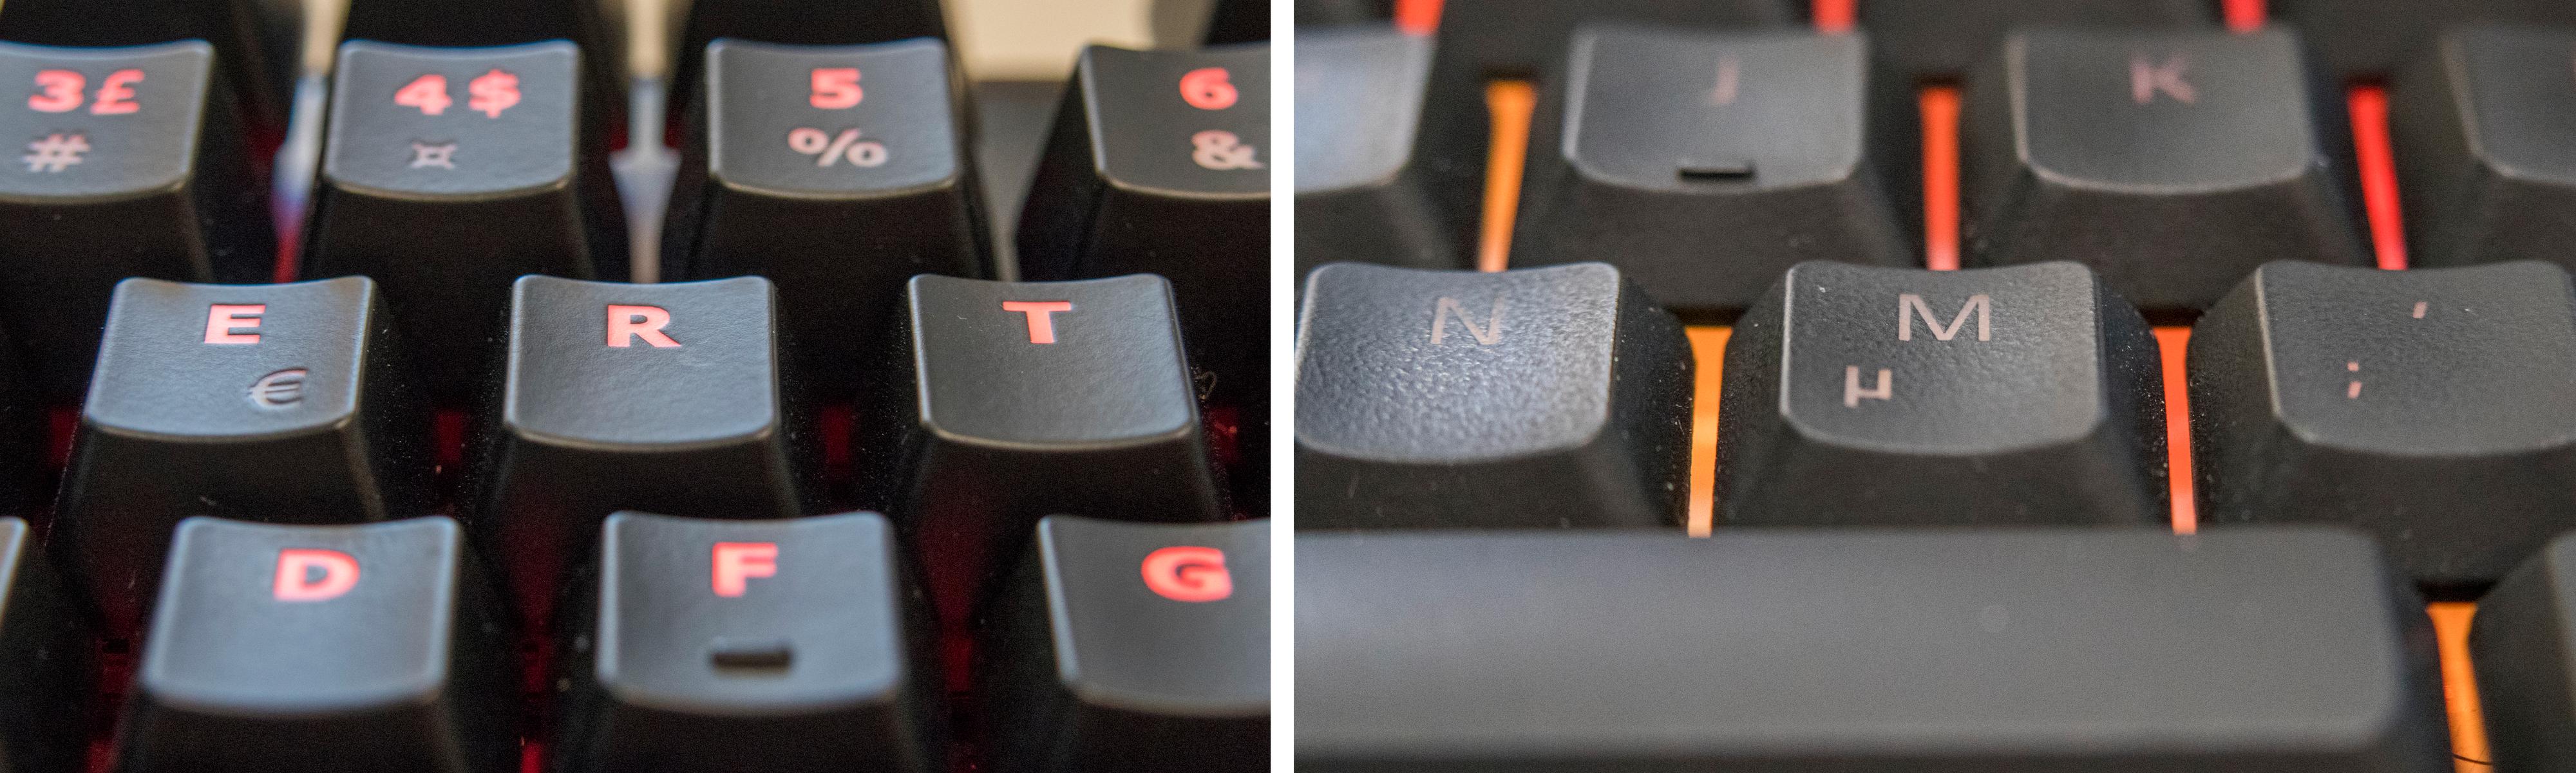 De fleste spilltastaturene har høye taster, men noen, som Razer Ornata (til høyre) har mellomhøye, som i alle fall undertegnede synes er bedre for lange skriveøkter.